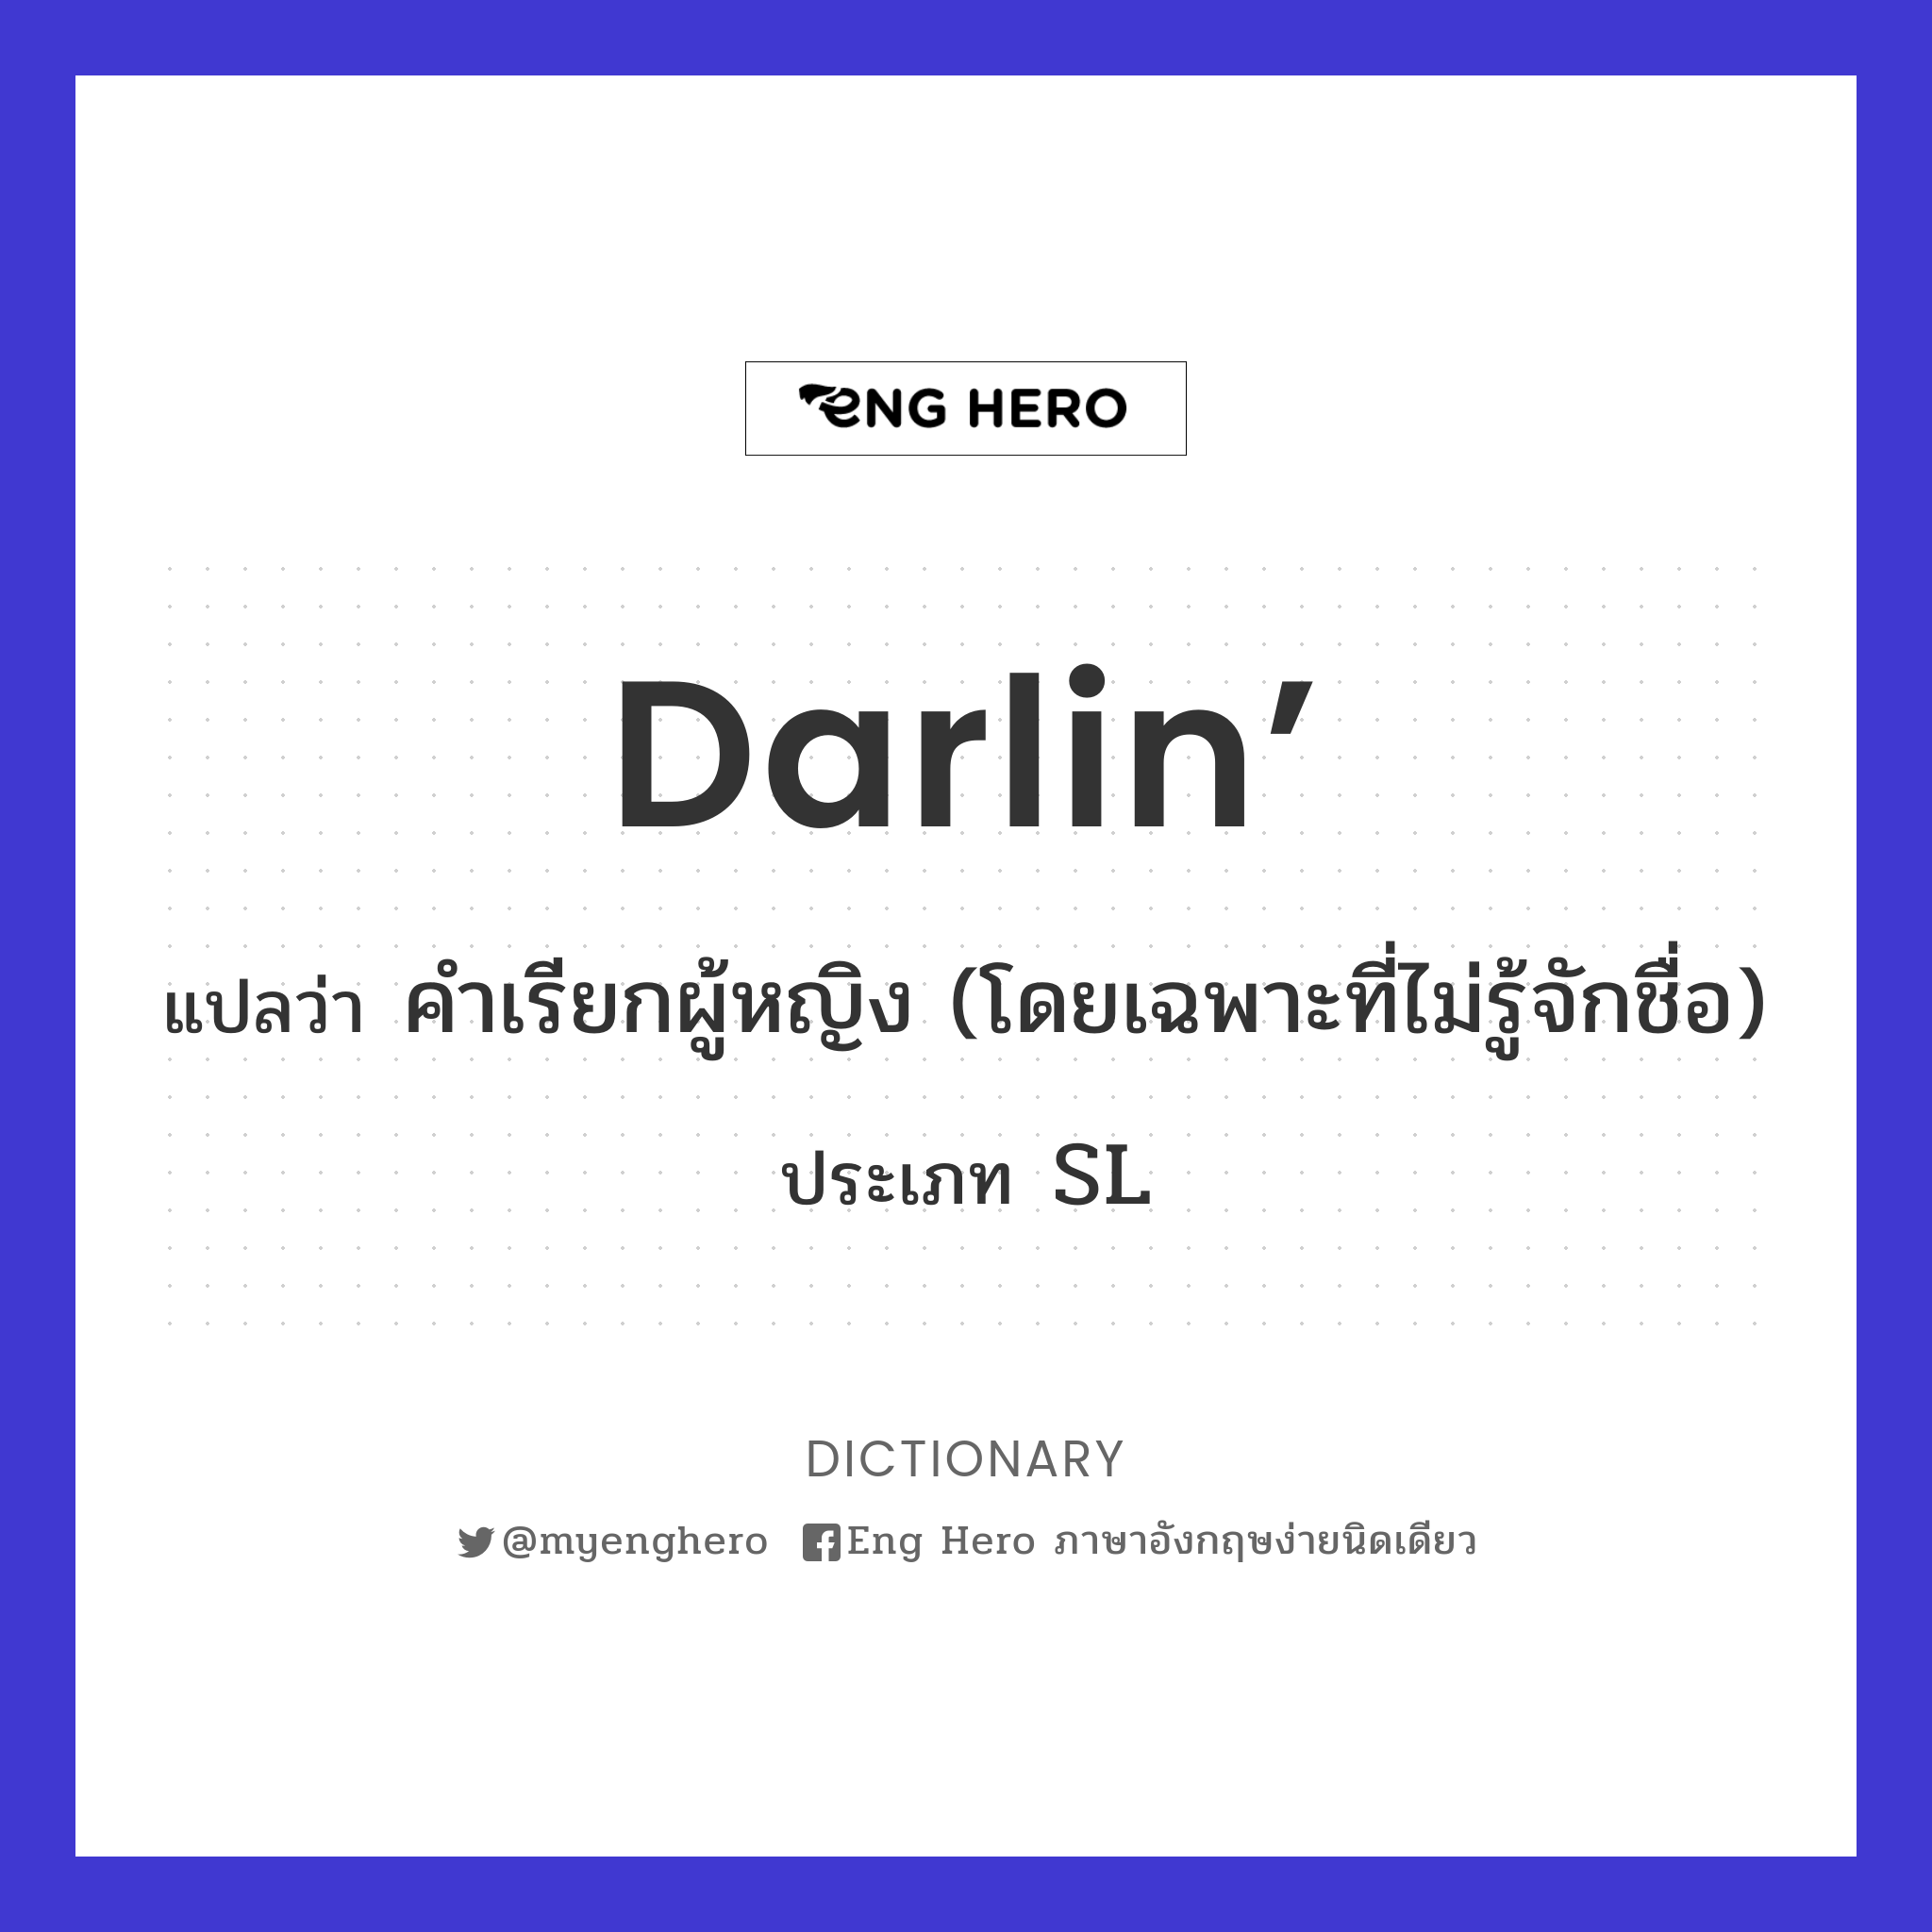 darlin’